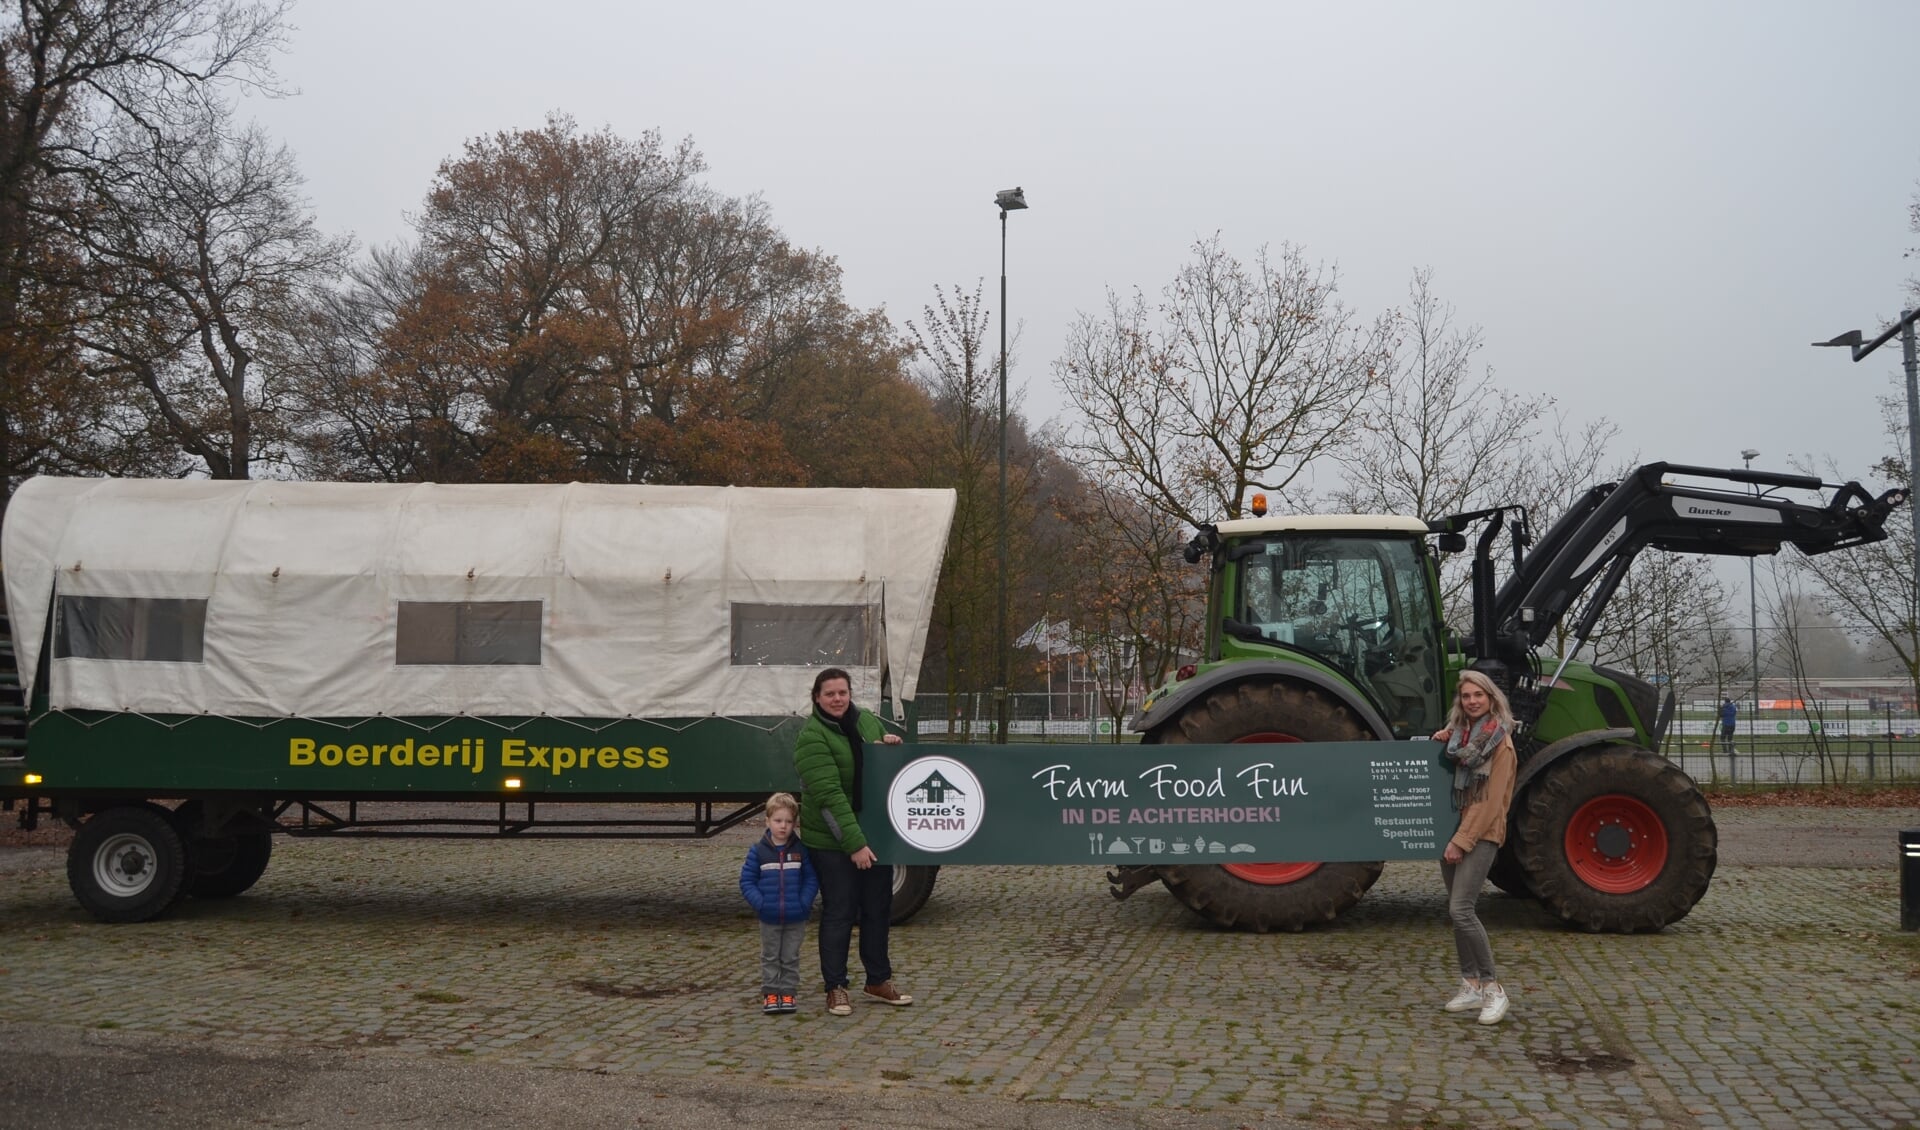 De Boerderij Express van Suzie's Farm wordt ook ingezet bij kampioenschapsrondjes van AZSV-teams door Aalten. FotoL Karin Stronks